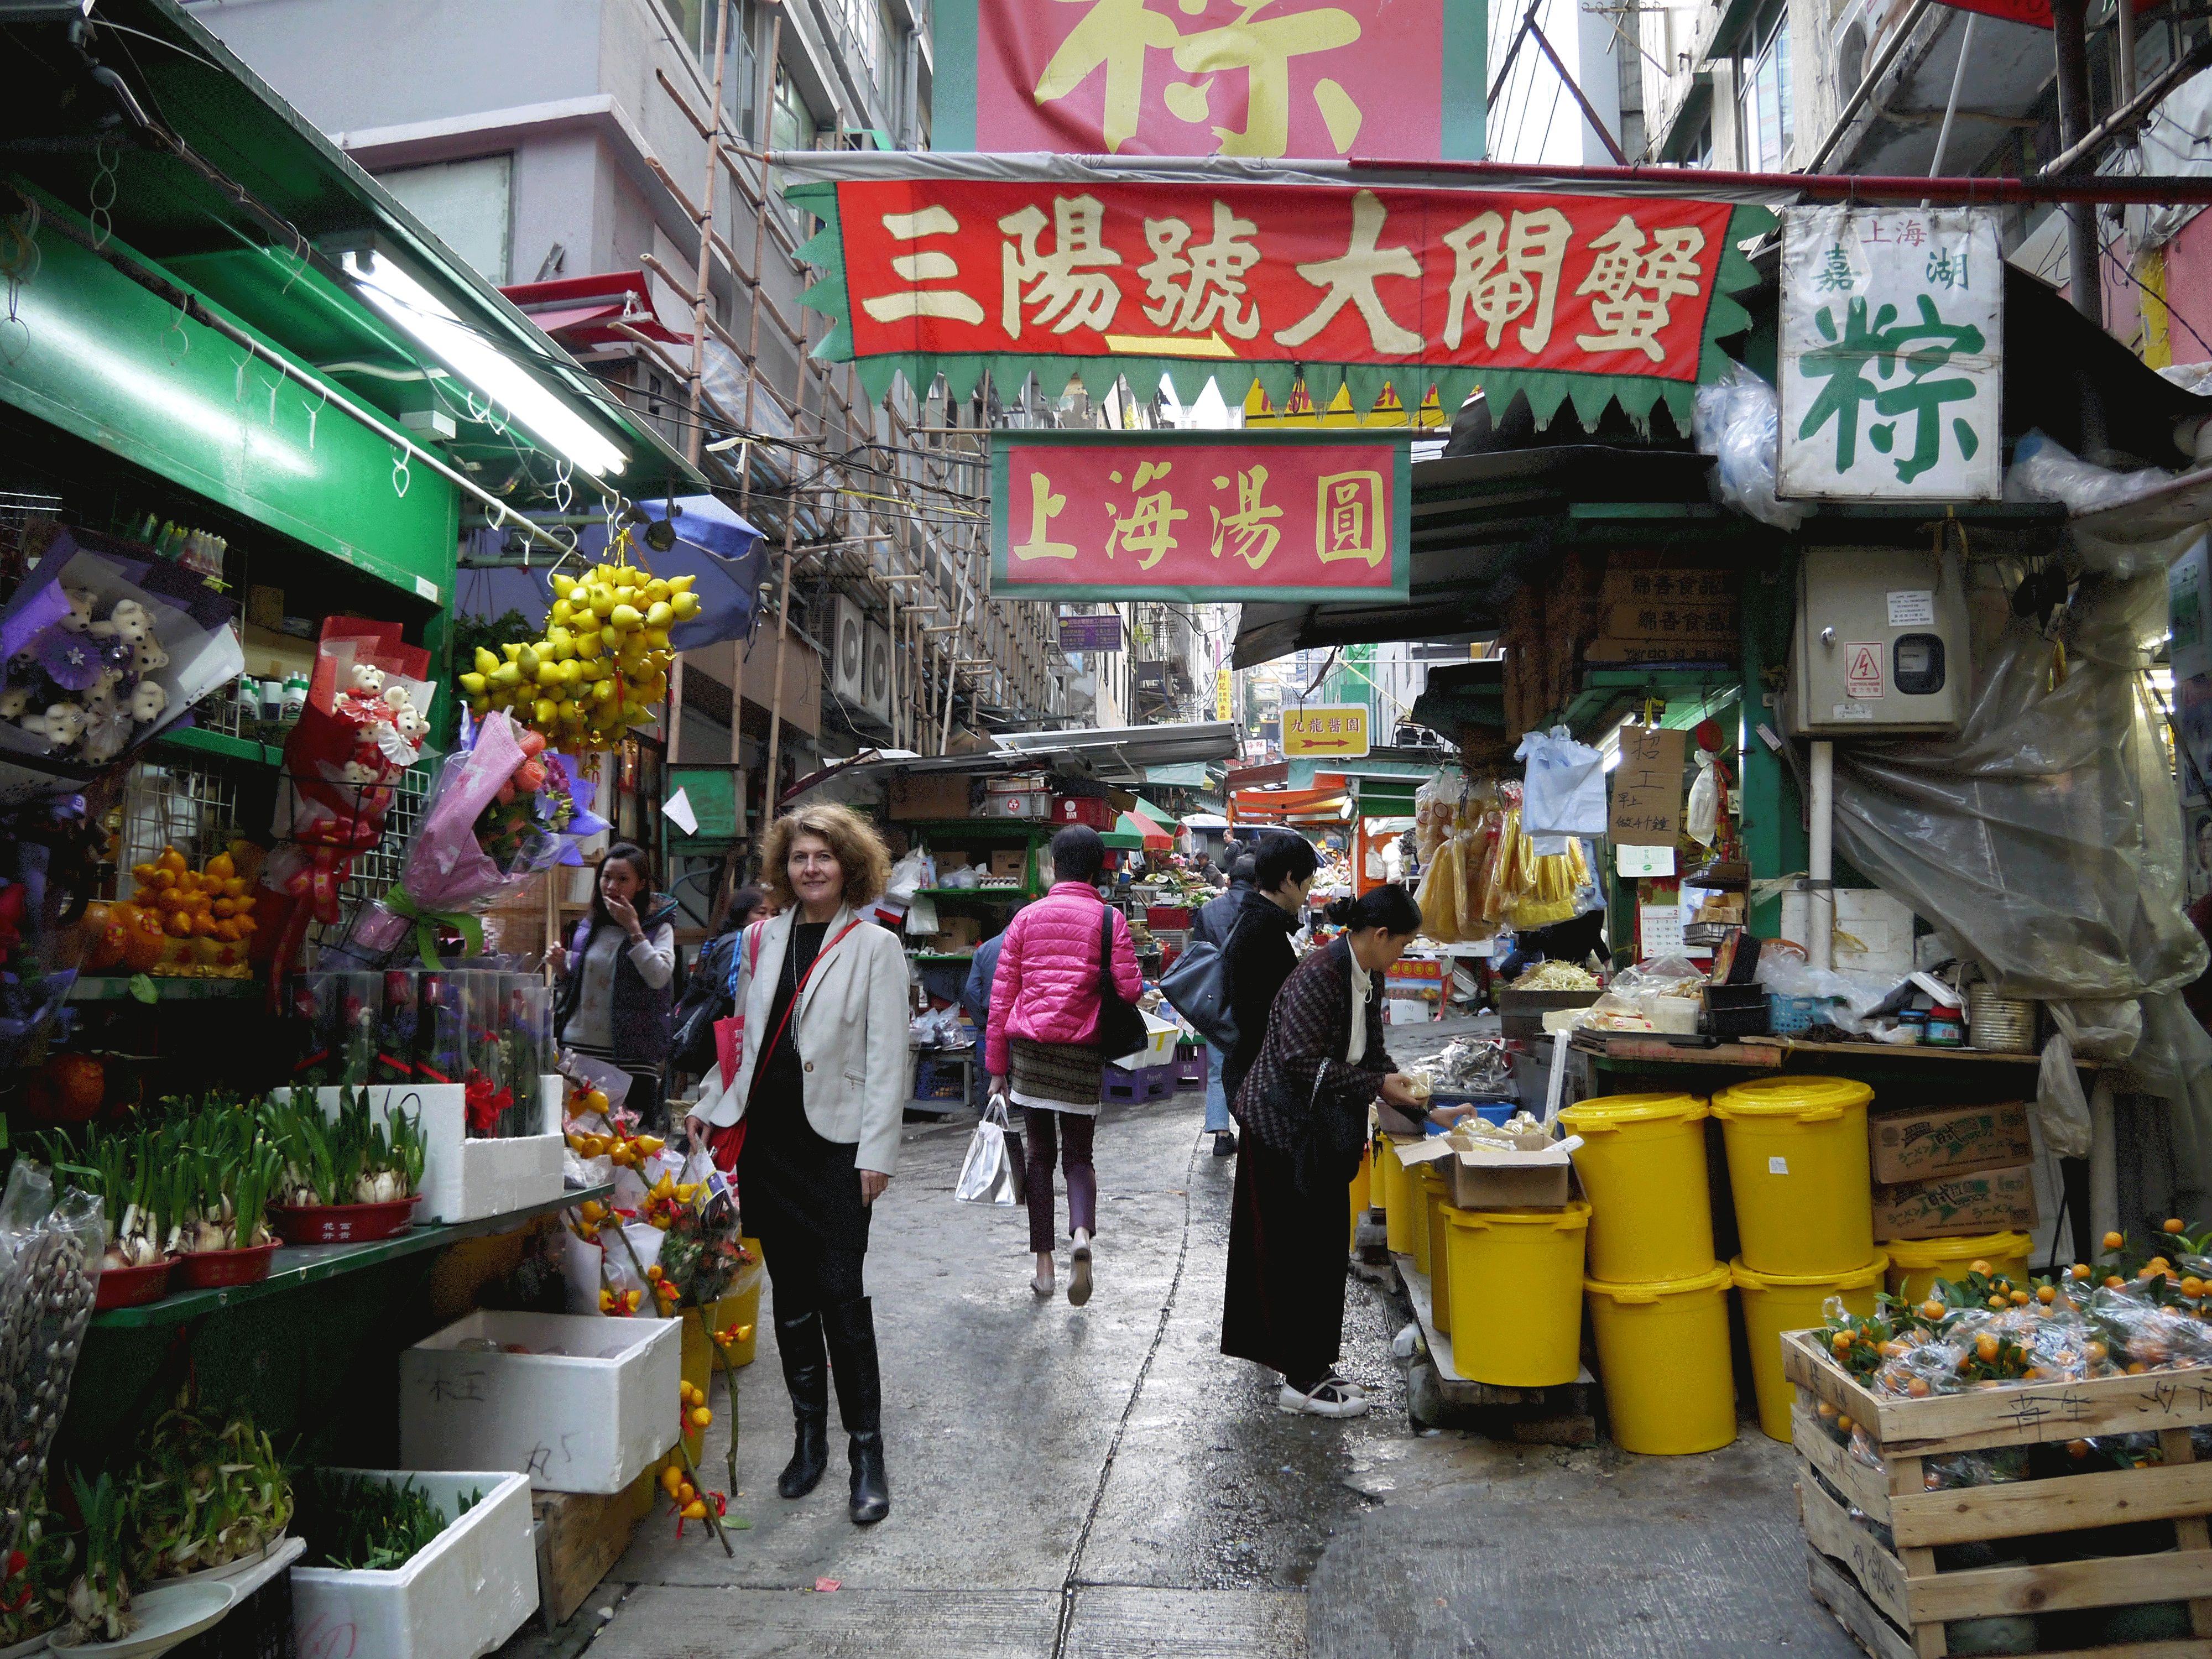 Hong Kong Entre deux grandes artères les petits commerces traditionnels perdurent